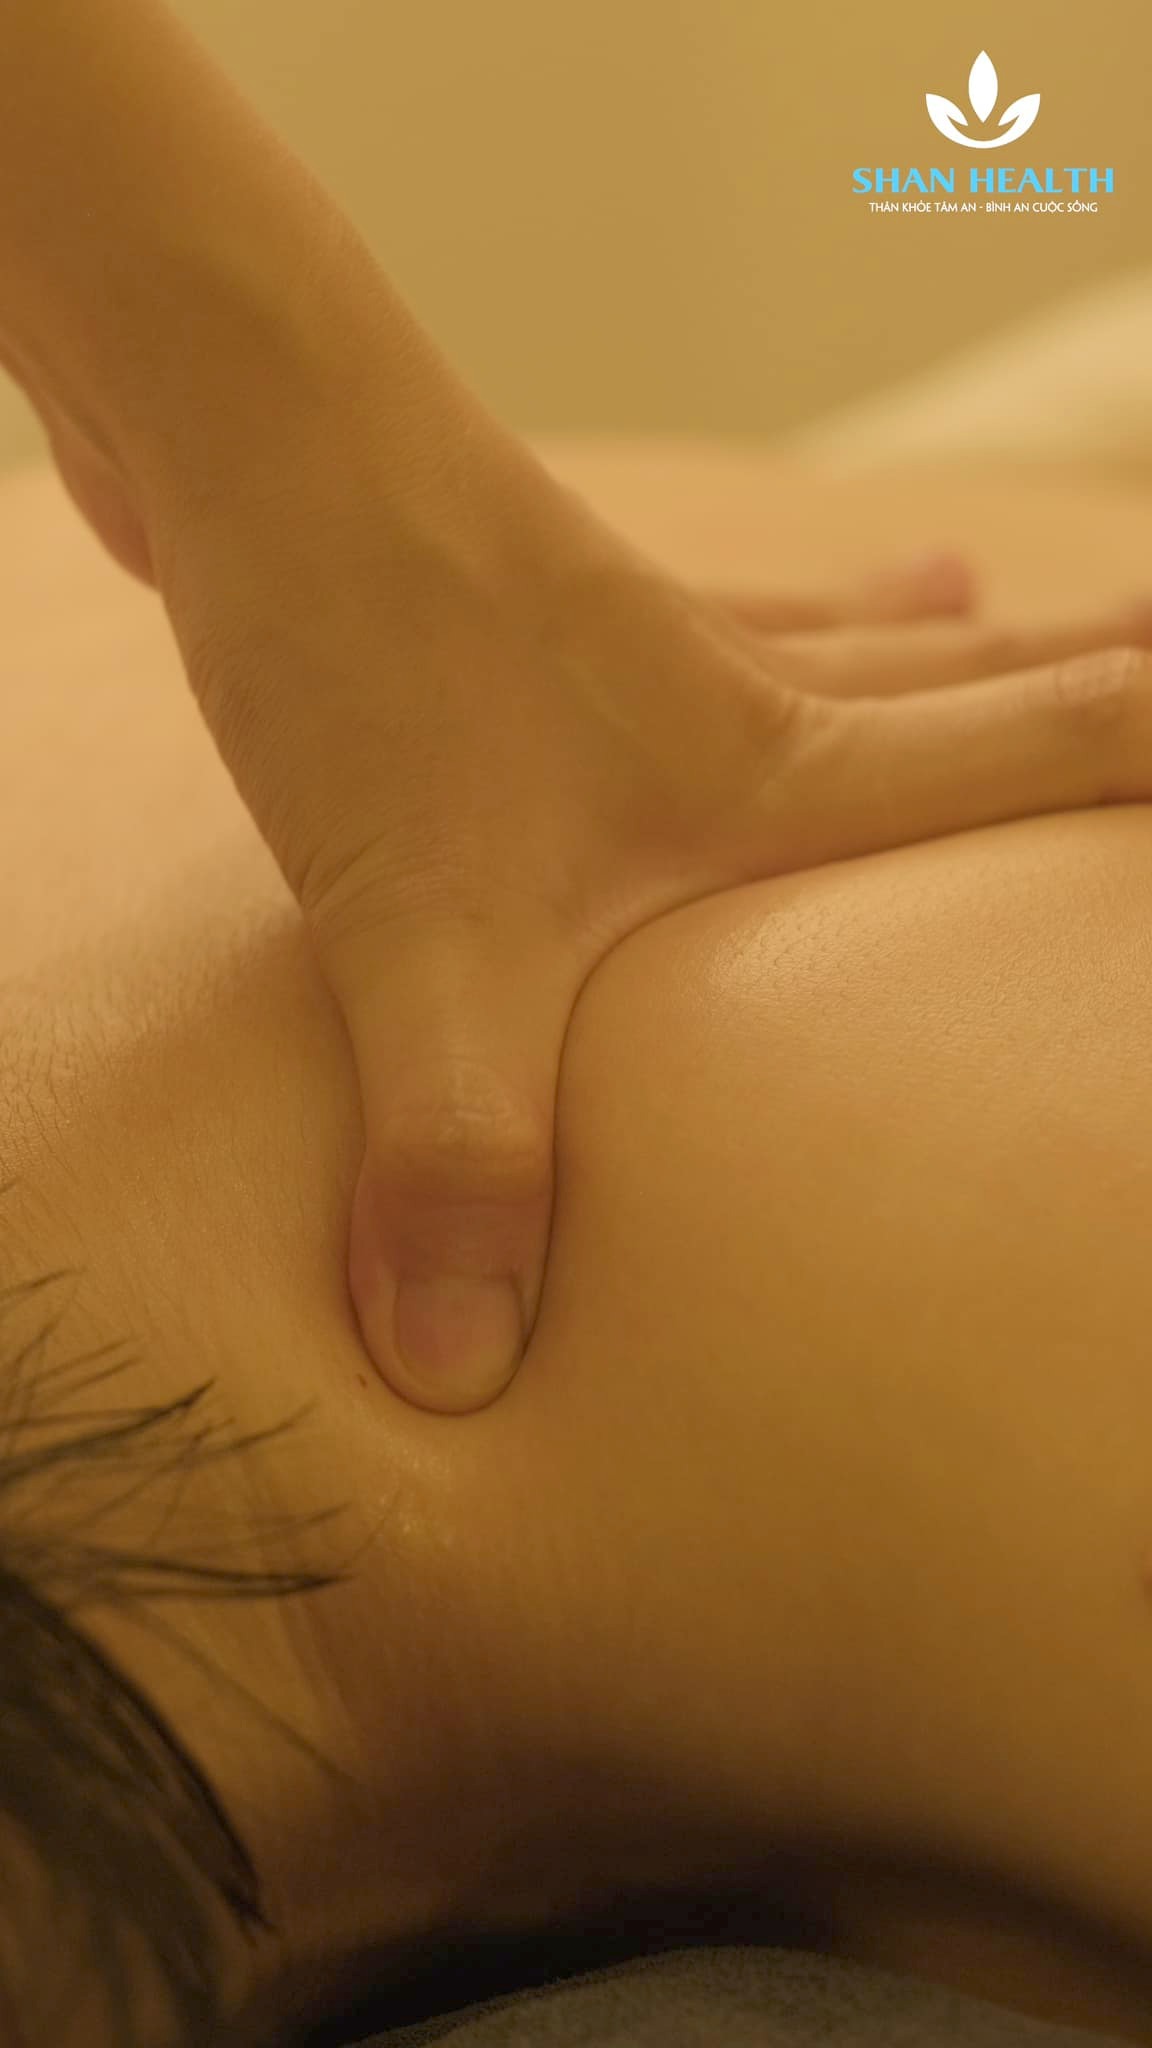 Massage - Cách chữa đau mỏi cổ, vai gáy hiệu quả, an toàn